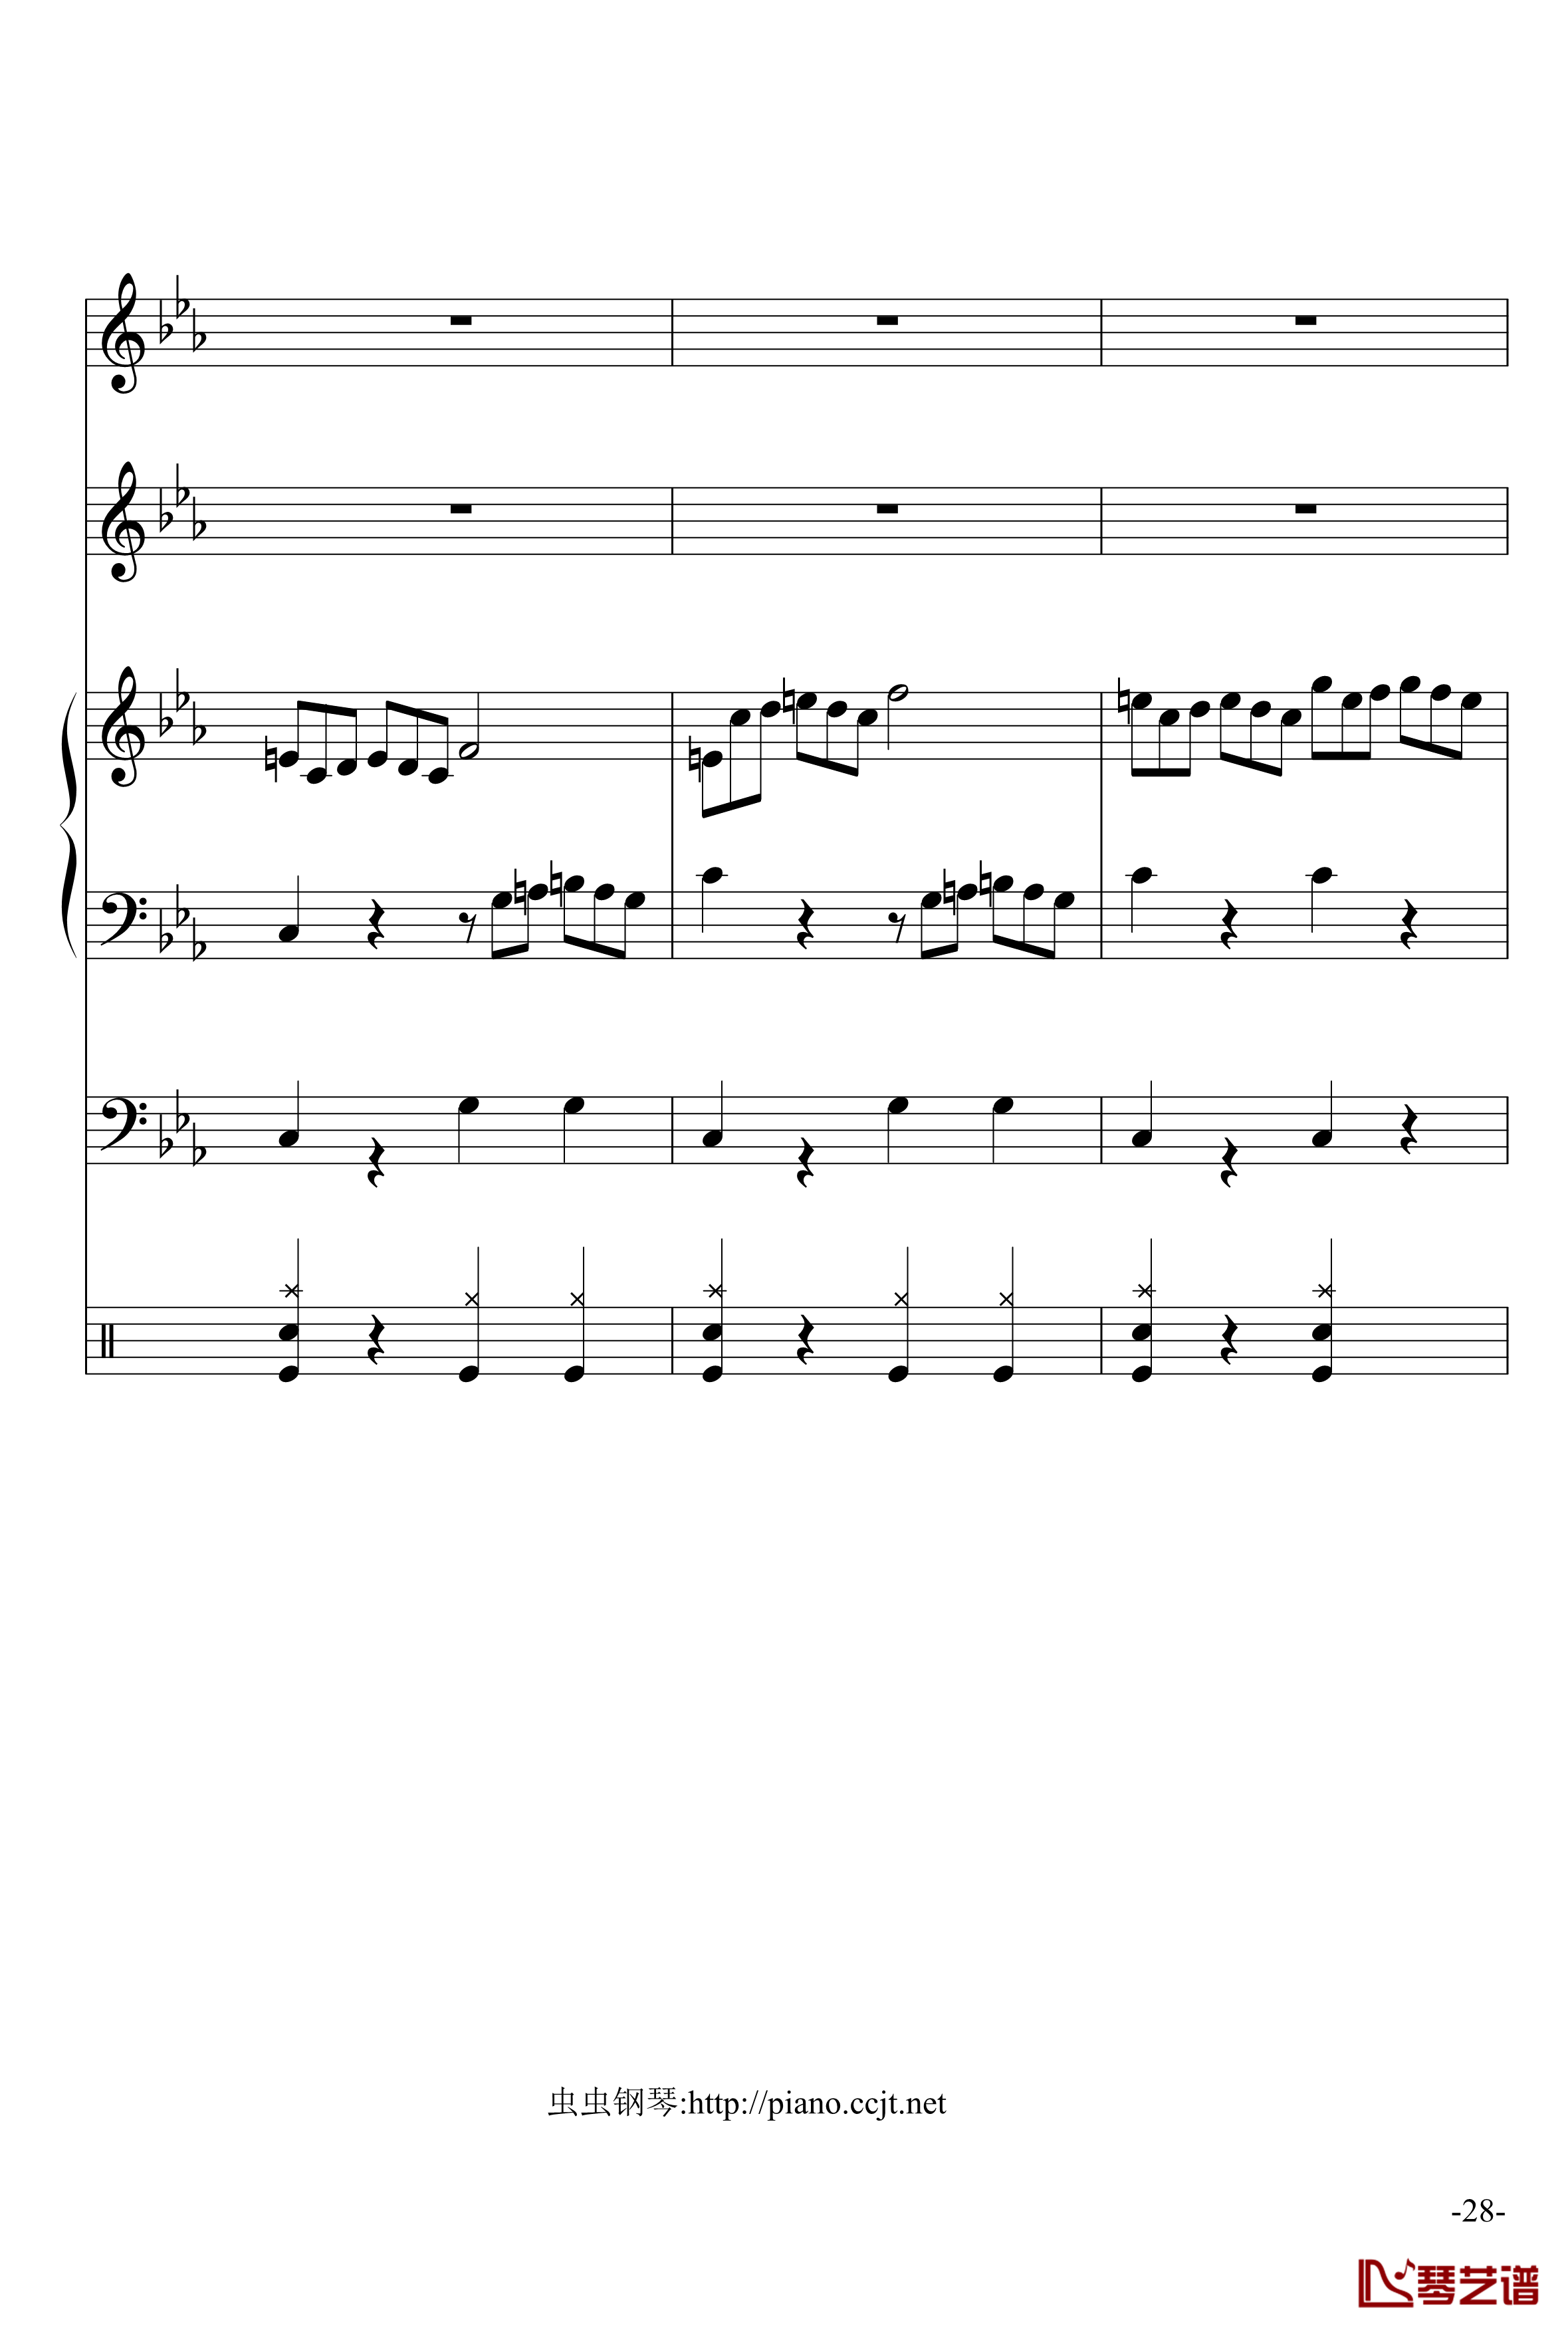 悲怆奏鸣曲钢琴谱-加小乐队-贝多芬-beethoven28